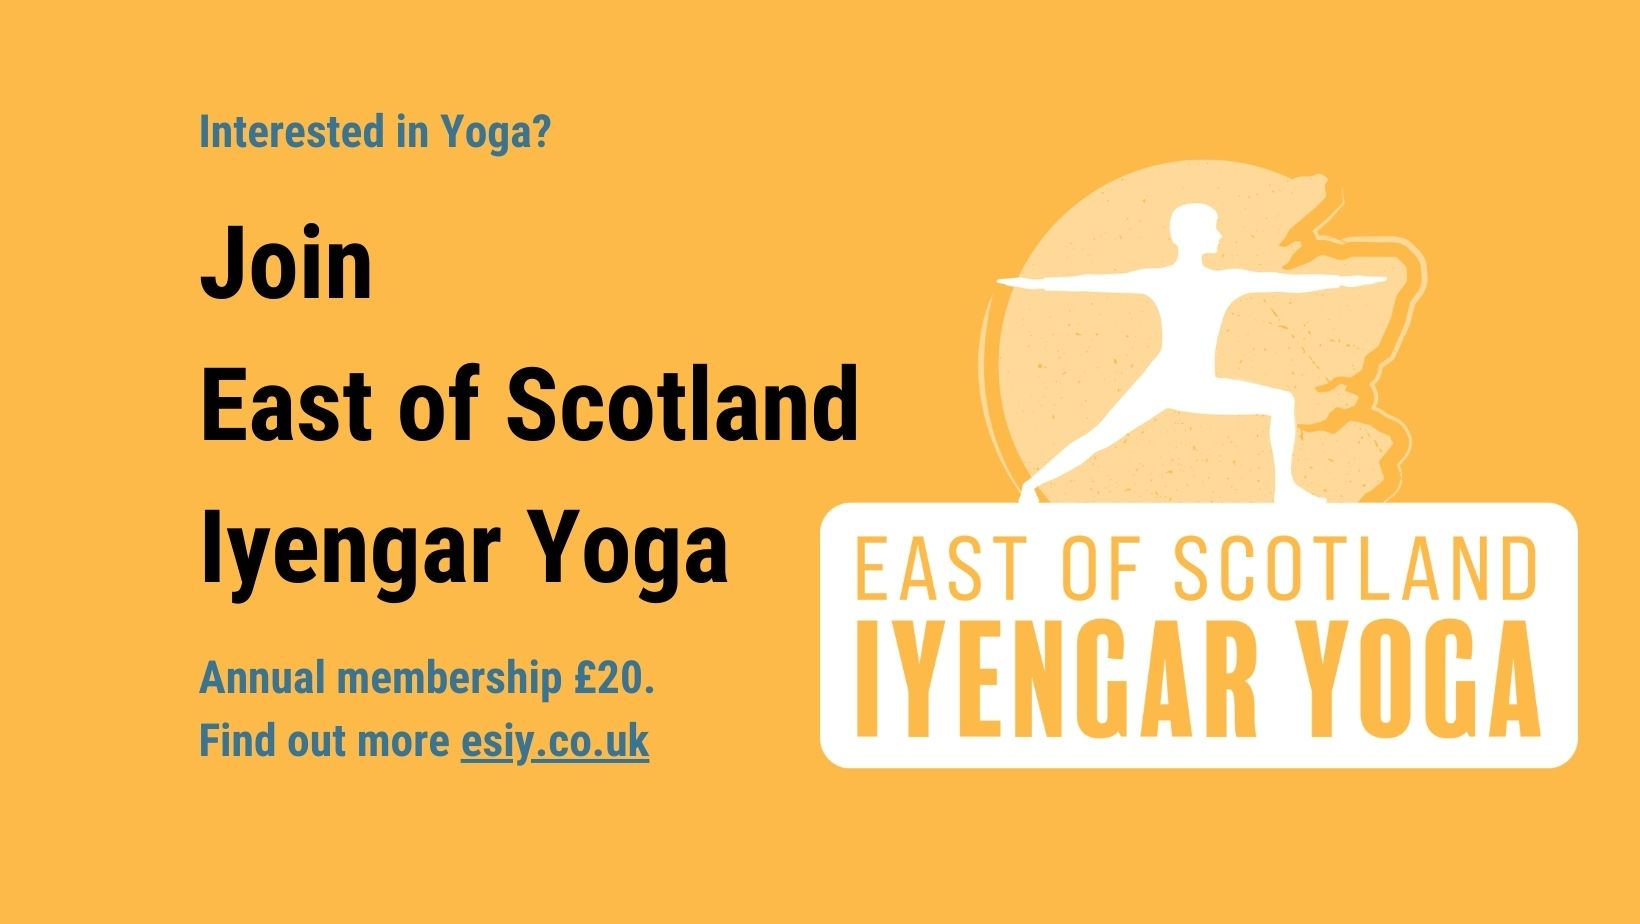 Join East of Scotland Iyengar Yoga for £20 annual membership.